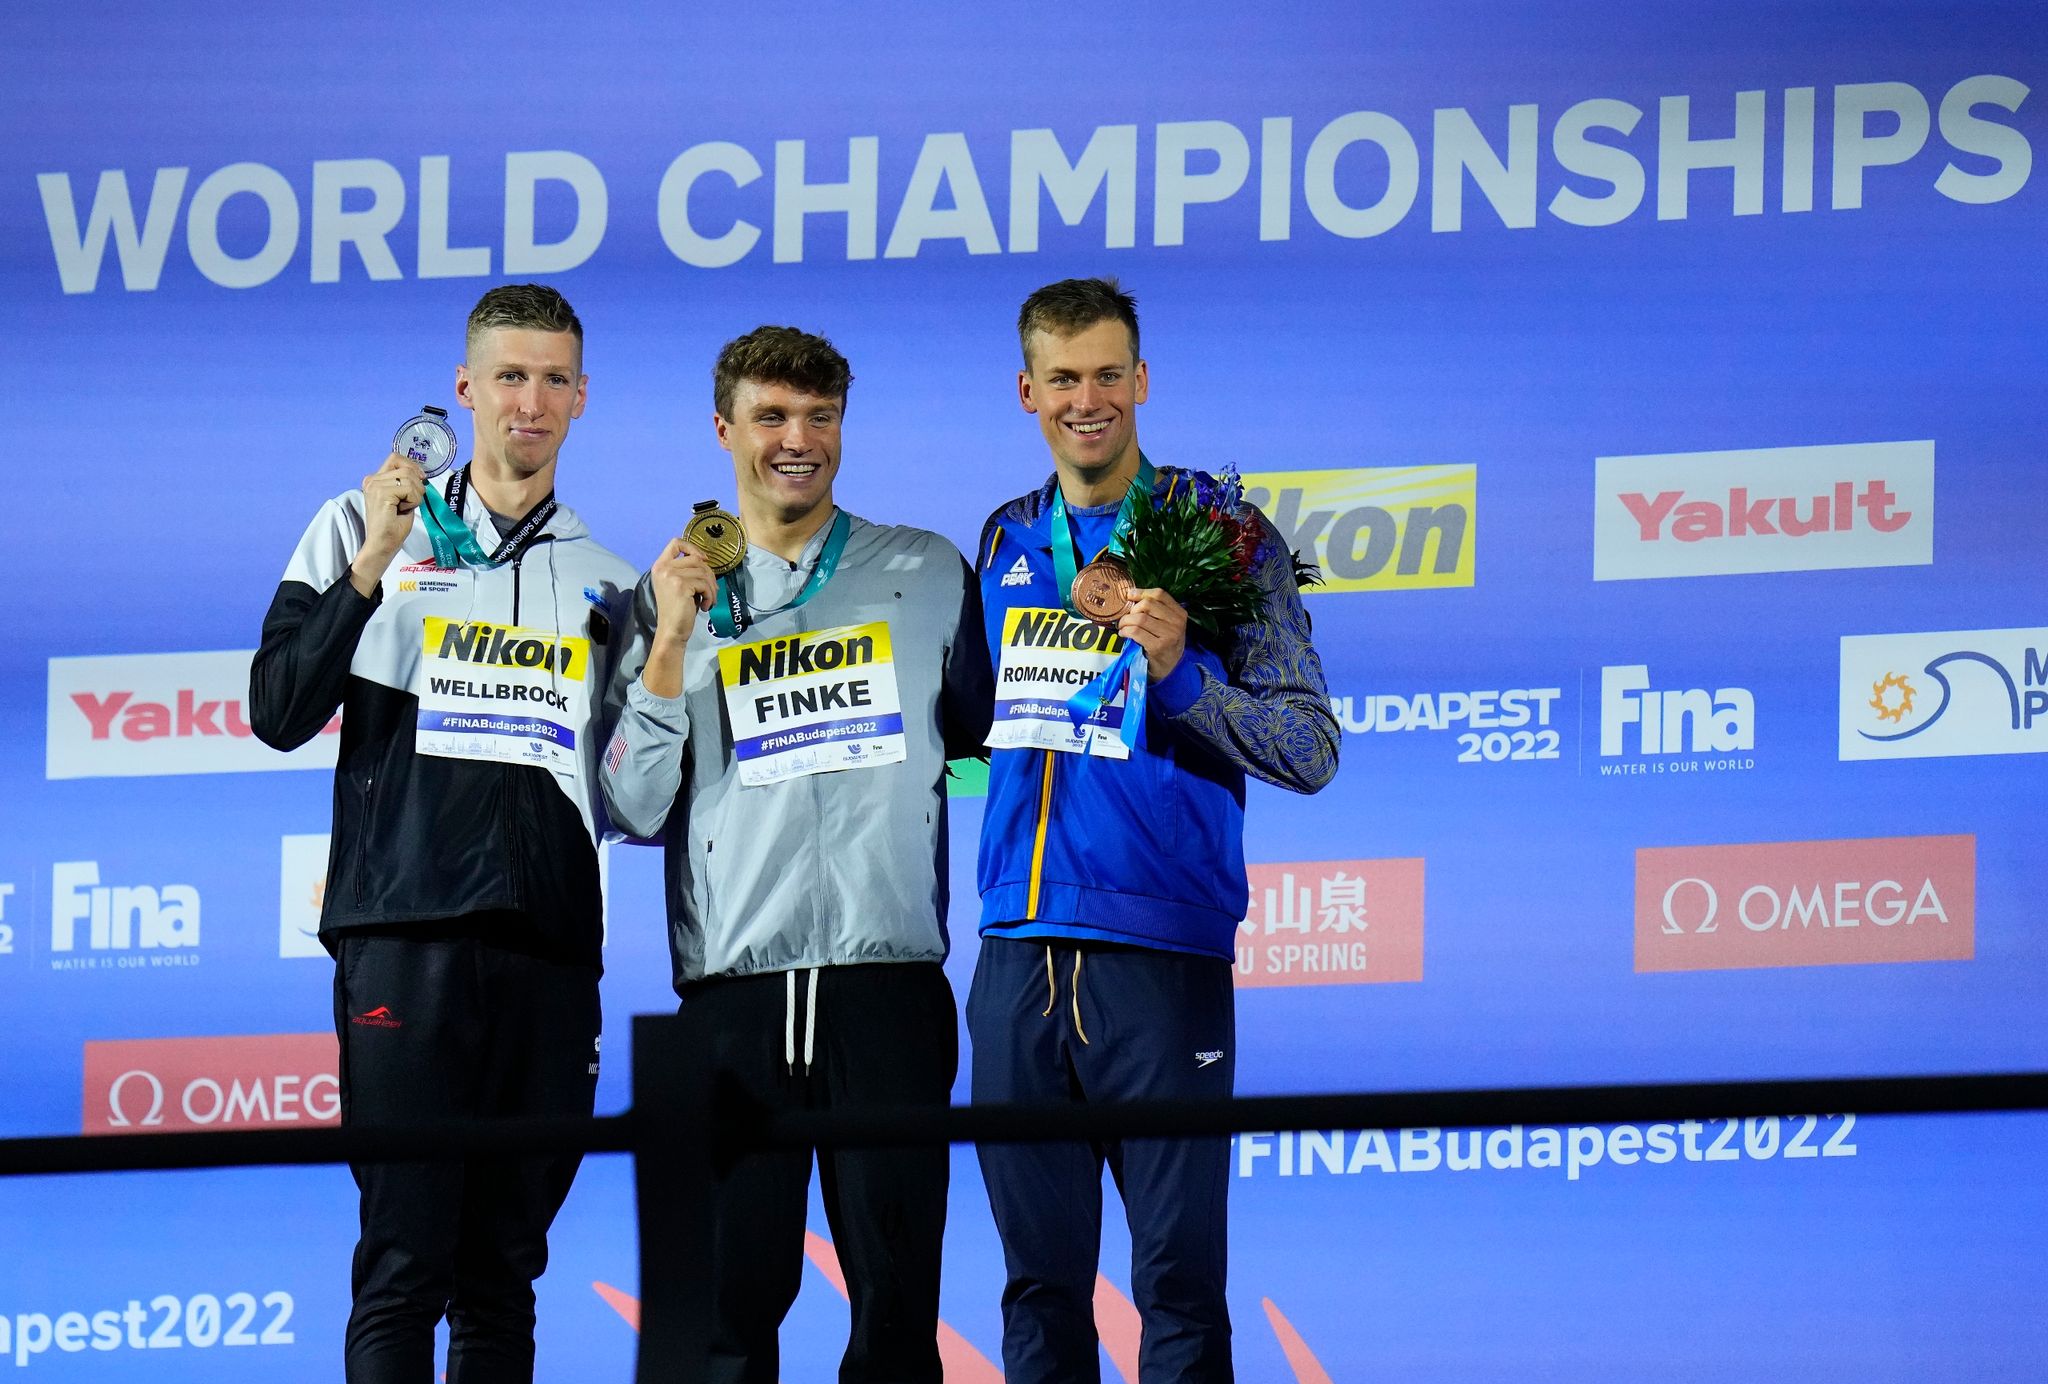 Der Zweitplatzierte Florian Wellbrock (l-r), Sieger Bobby Finke aus den USA, und der Ukrainer Michailo Romantschuk auf dem Podium.